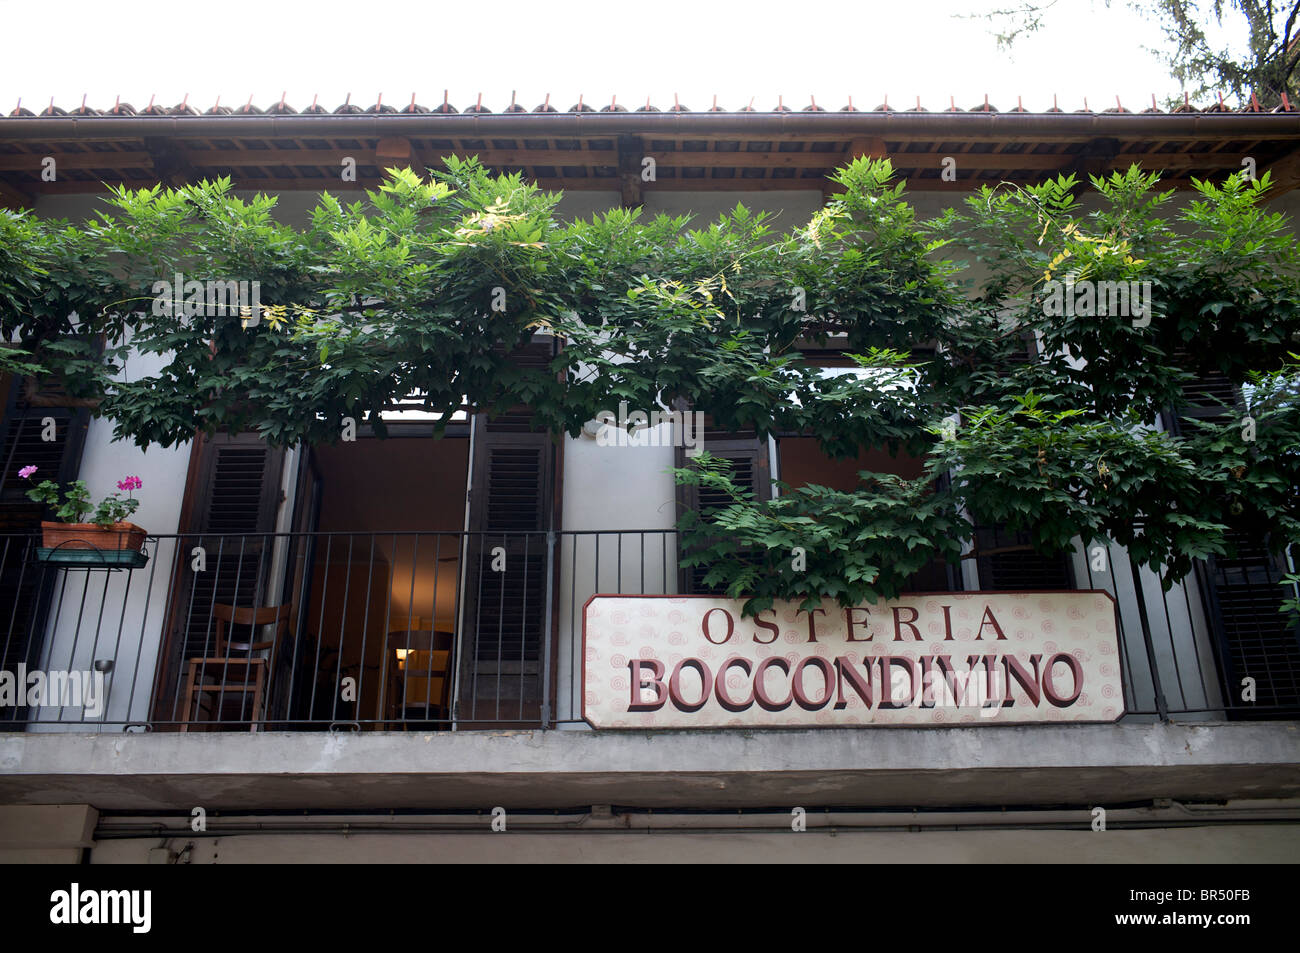 Osteria del Boccondivino in Bra Italy Stock Photo - Alamy